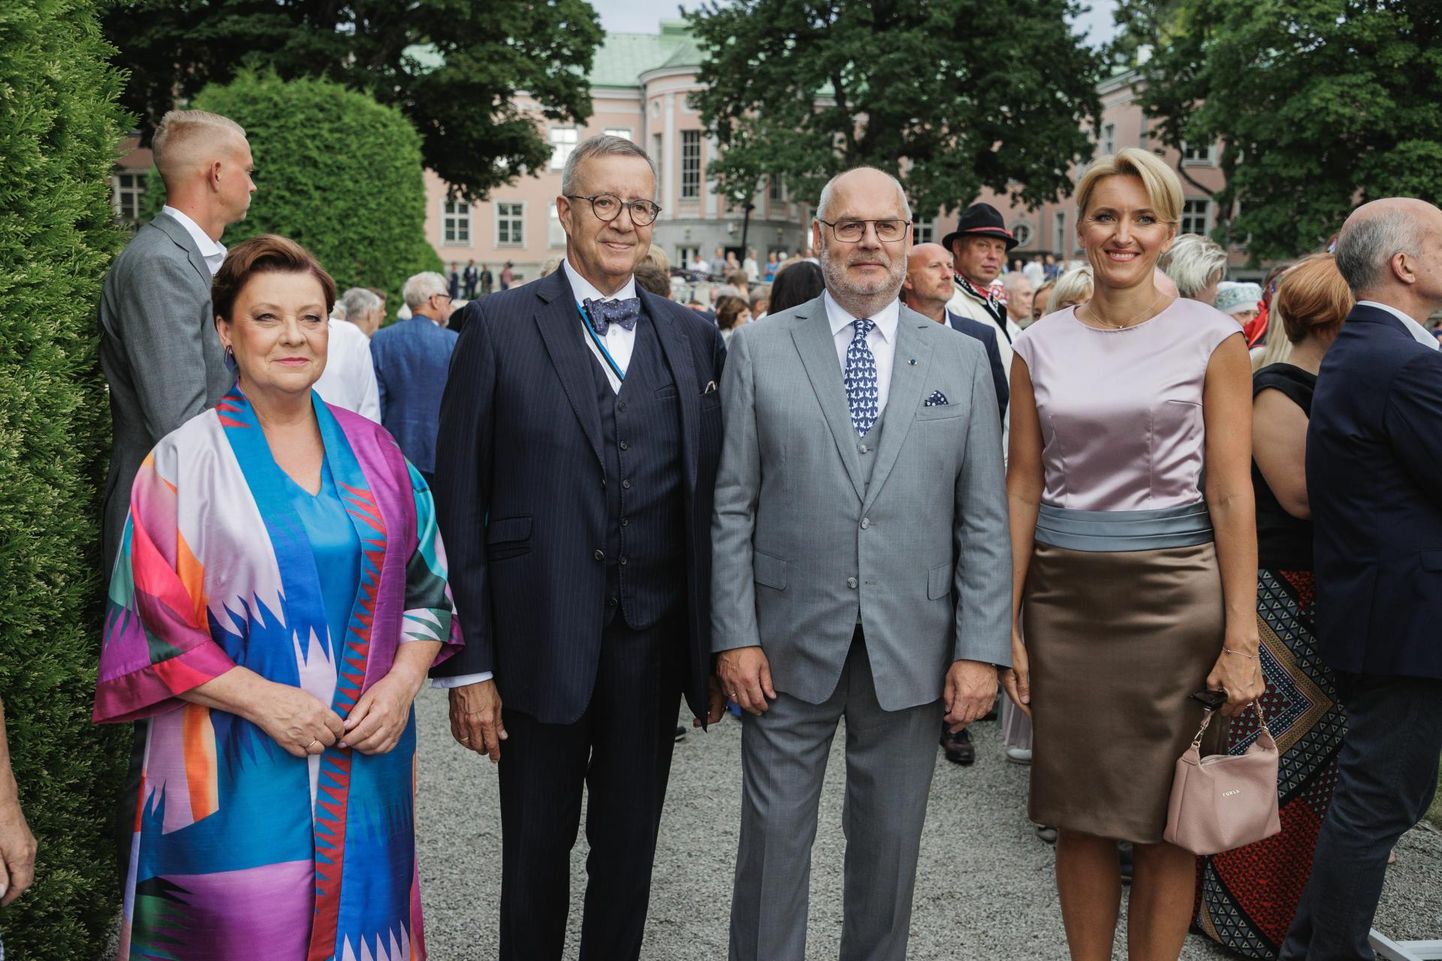 Roosiaia vastuvõtul oli presidente rohkem kui üks. Pildile jäid president Alar Karis ja president Toomas Hendrik Ilves abikaasadega.